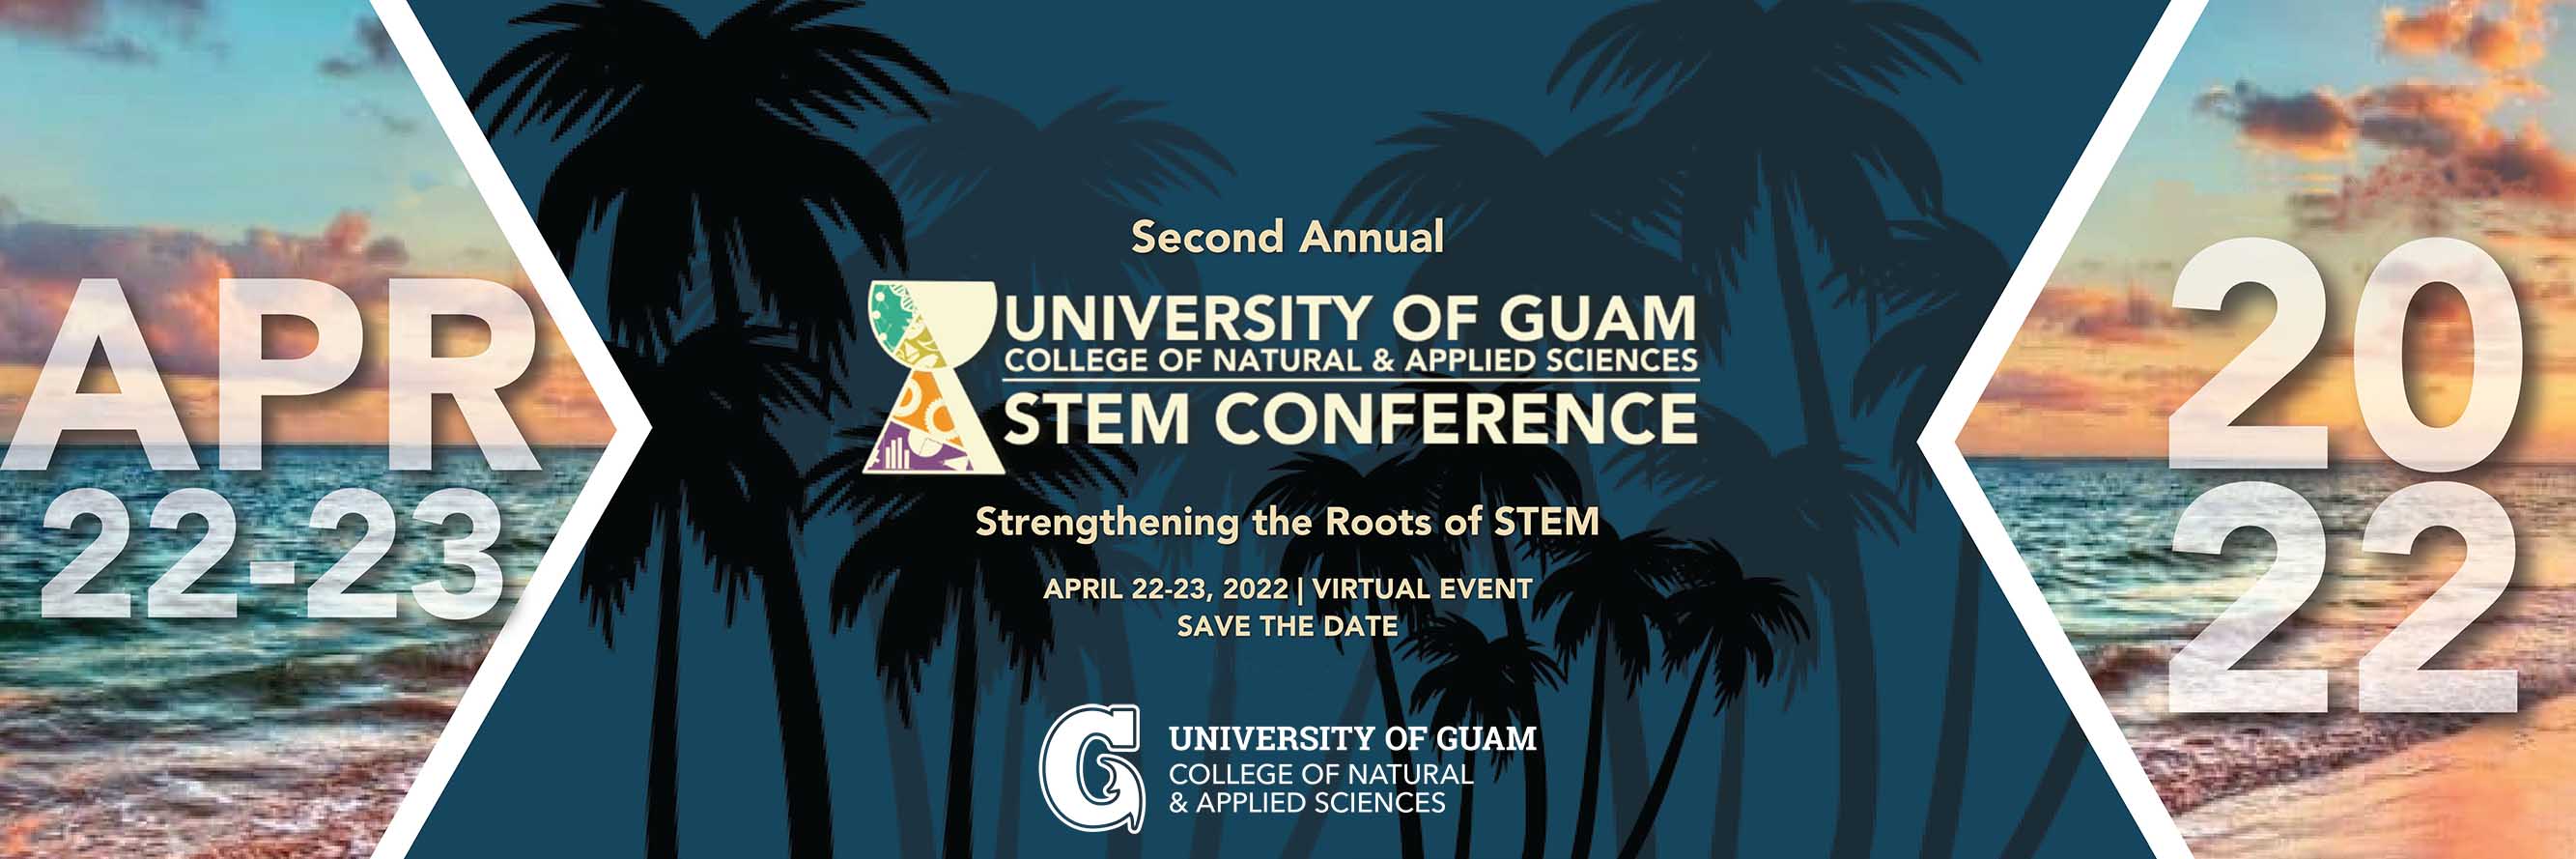 CNAS STEM conference banner